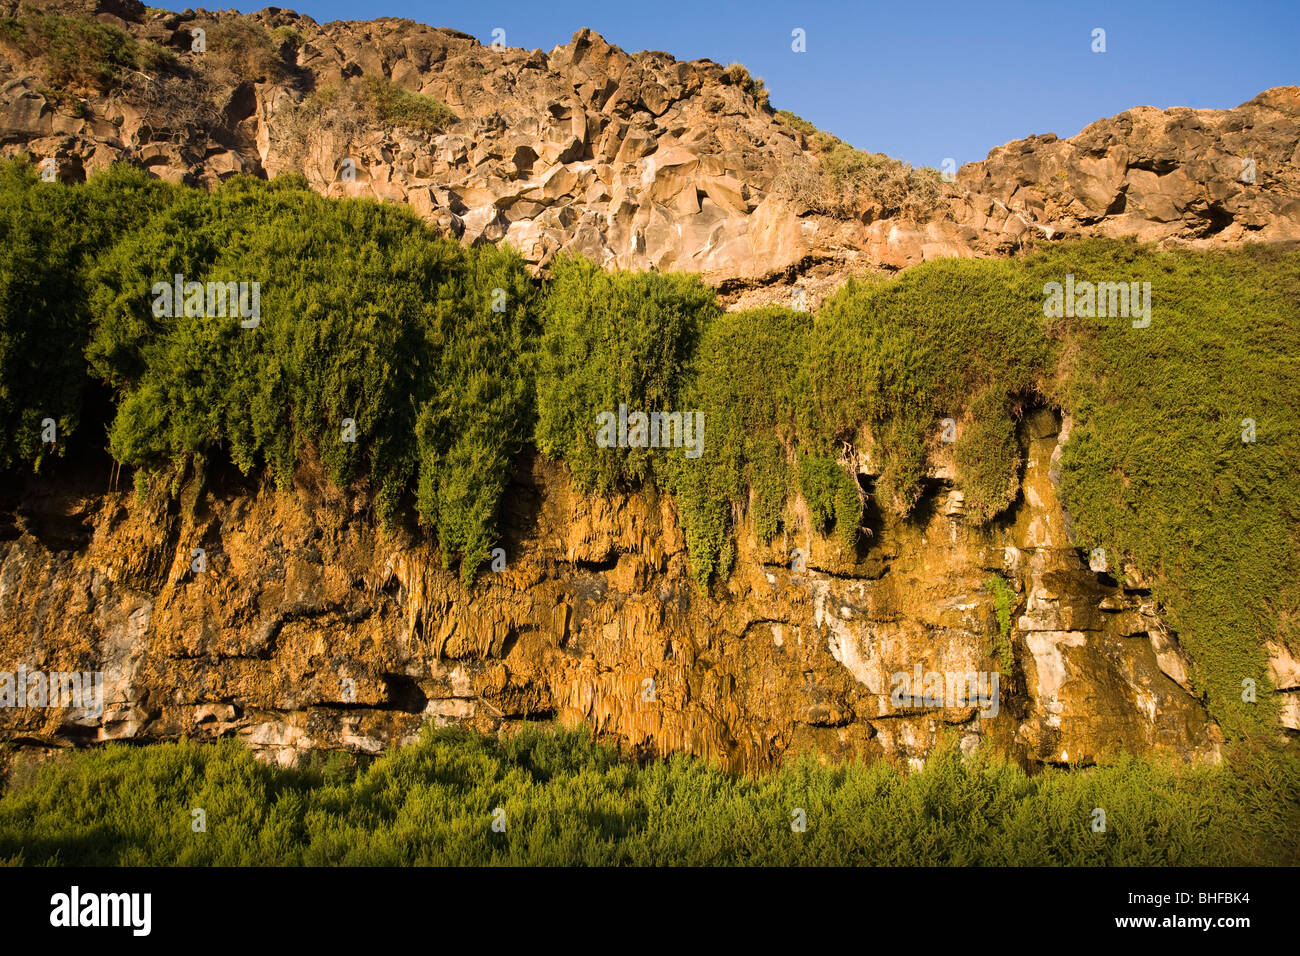 À voir avec cascade tufs calcaires, Barranco de los Molinos, Parque Natural de Corralejo, Fuerteventura, Iles des Canaries Banque D'Images